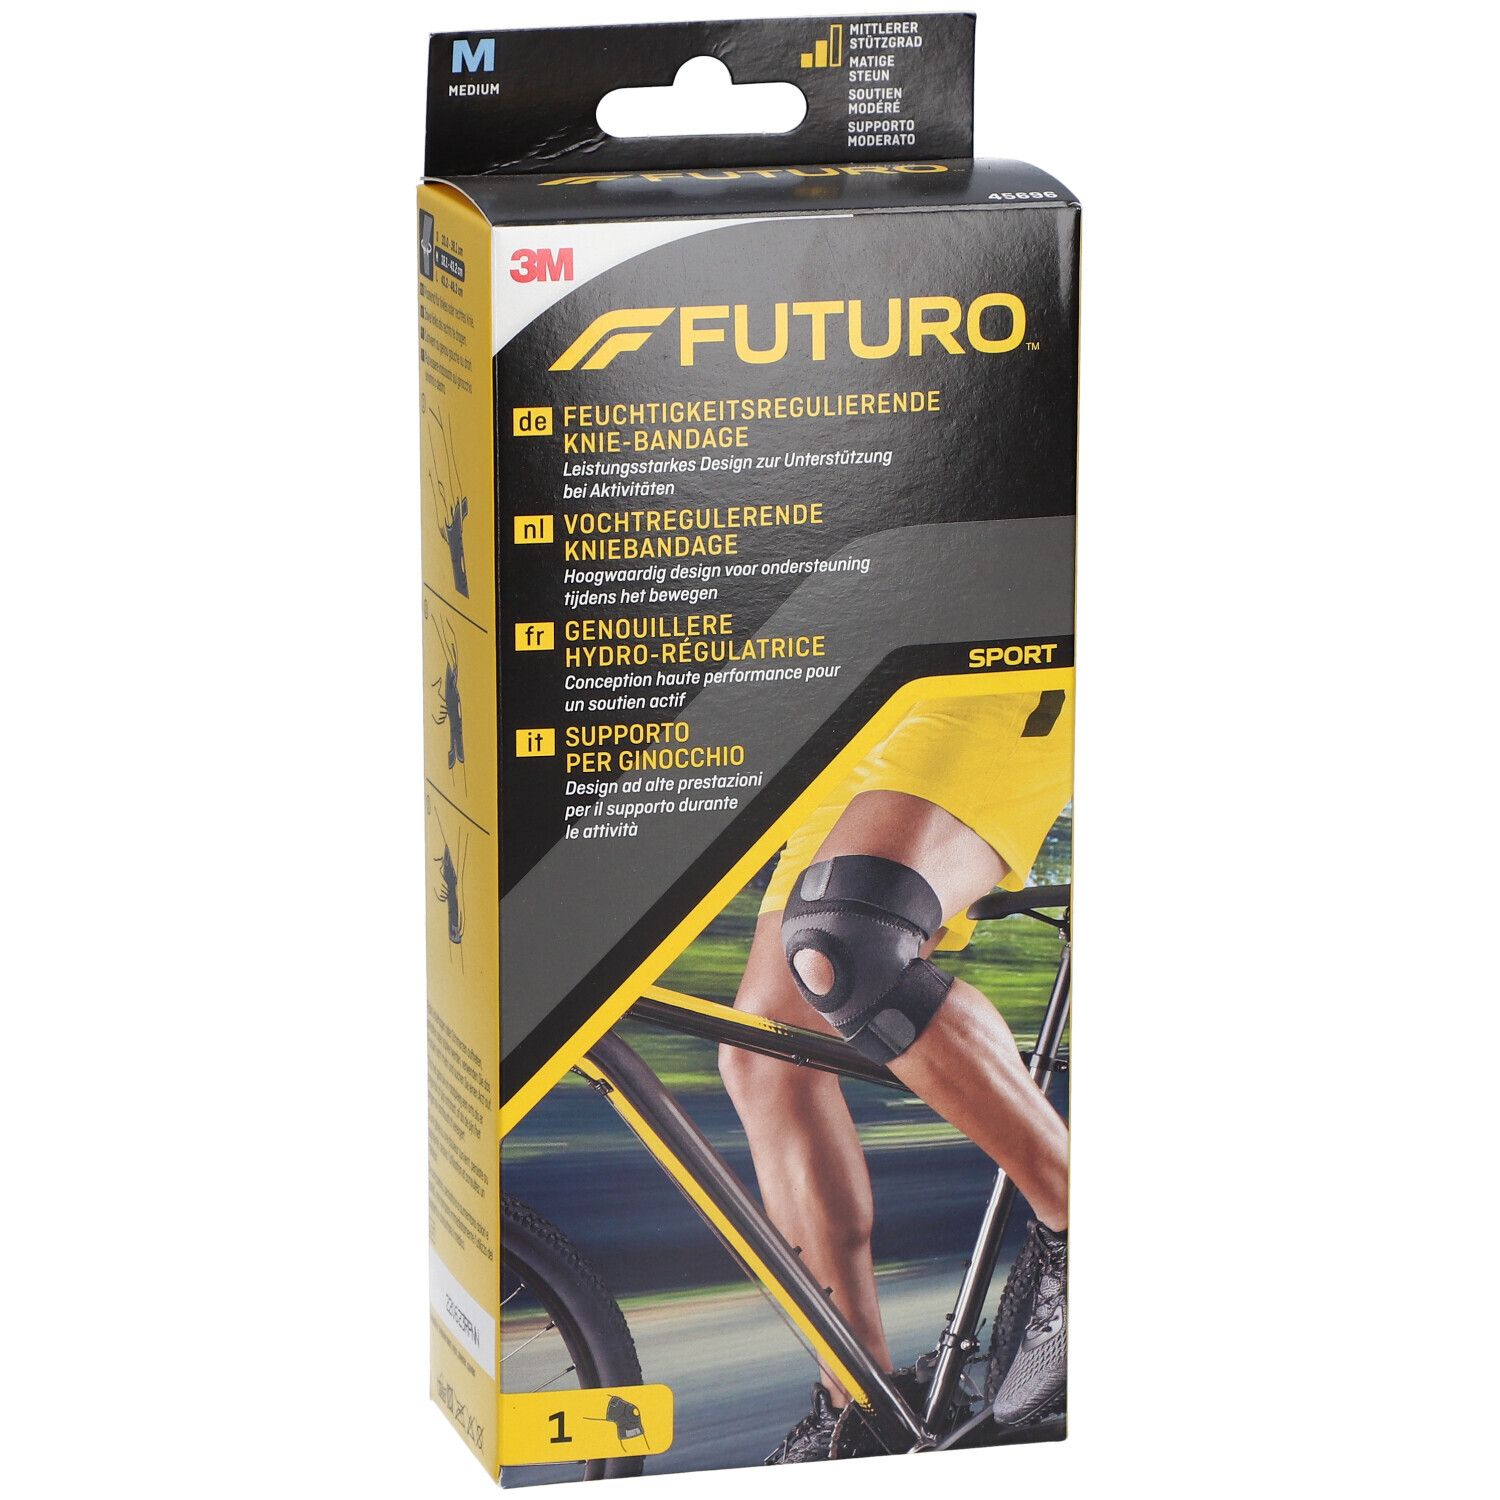 FUTURO™ Sport feuchtigkeitsregulierende Knie Bandage M